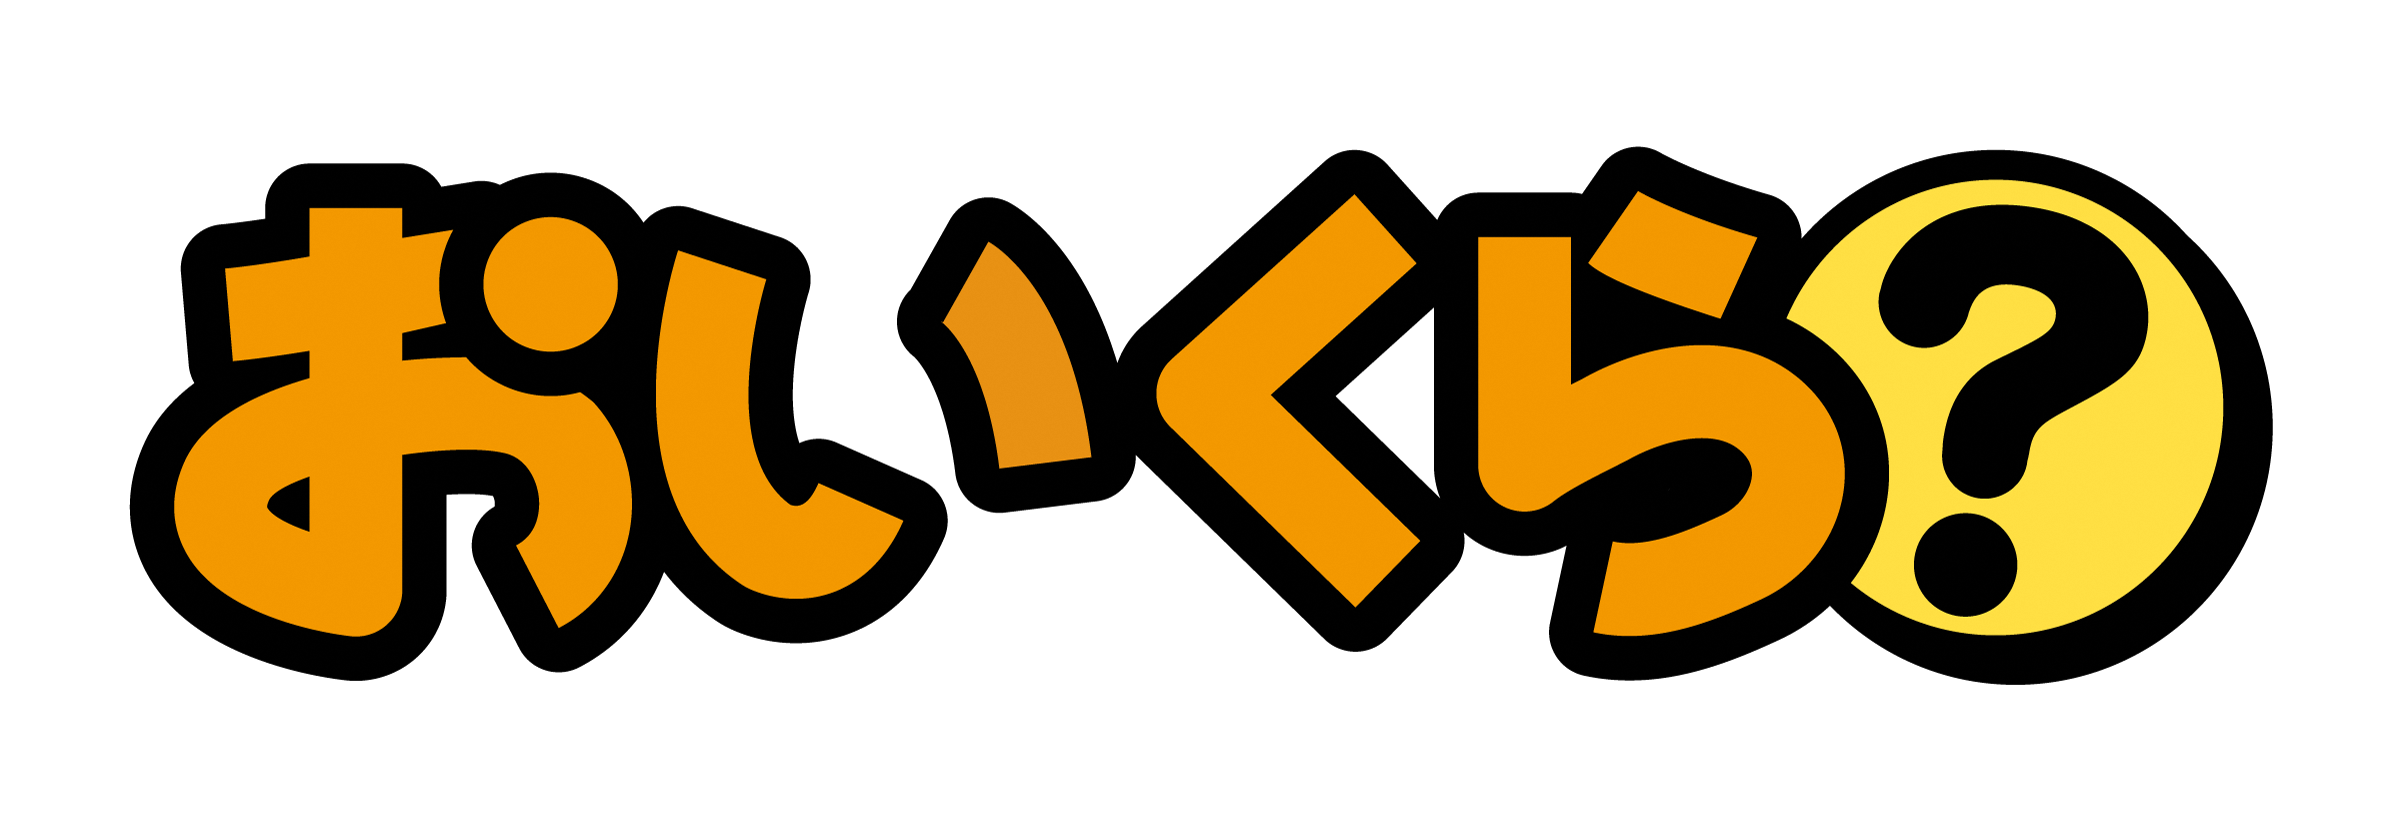 logo_oikura.png